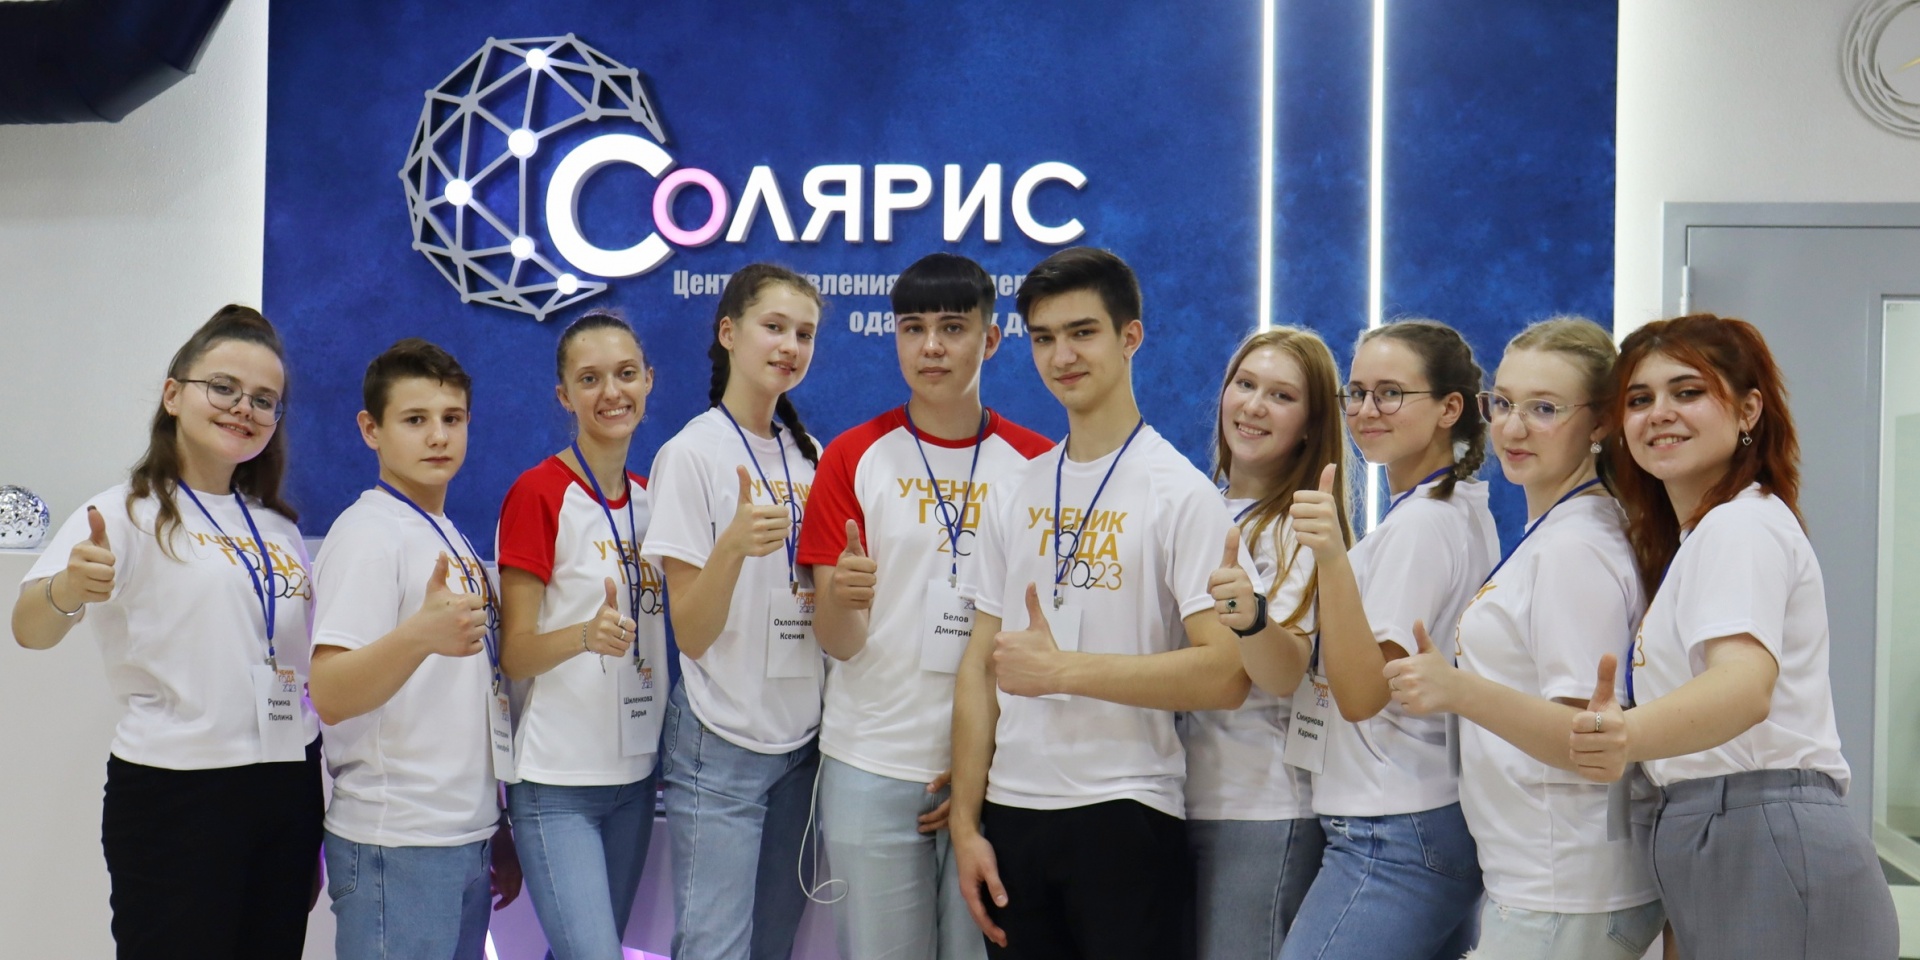 Более 200 школьников Ивановской области победили в конкурсах и фестивалях разного уровня